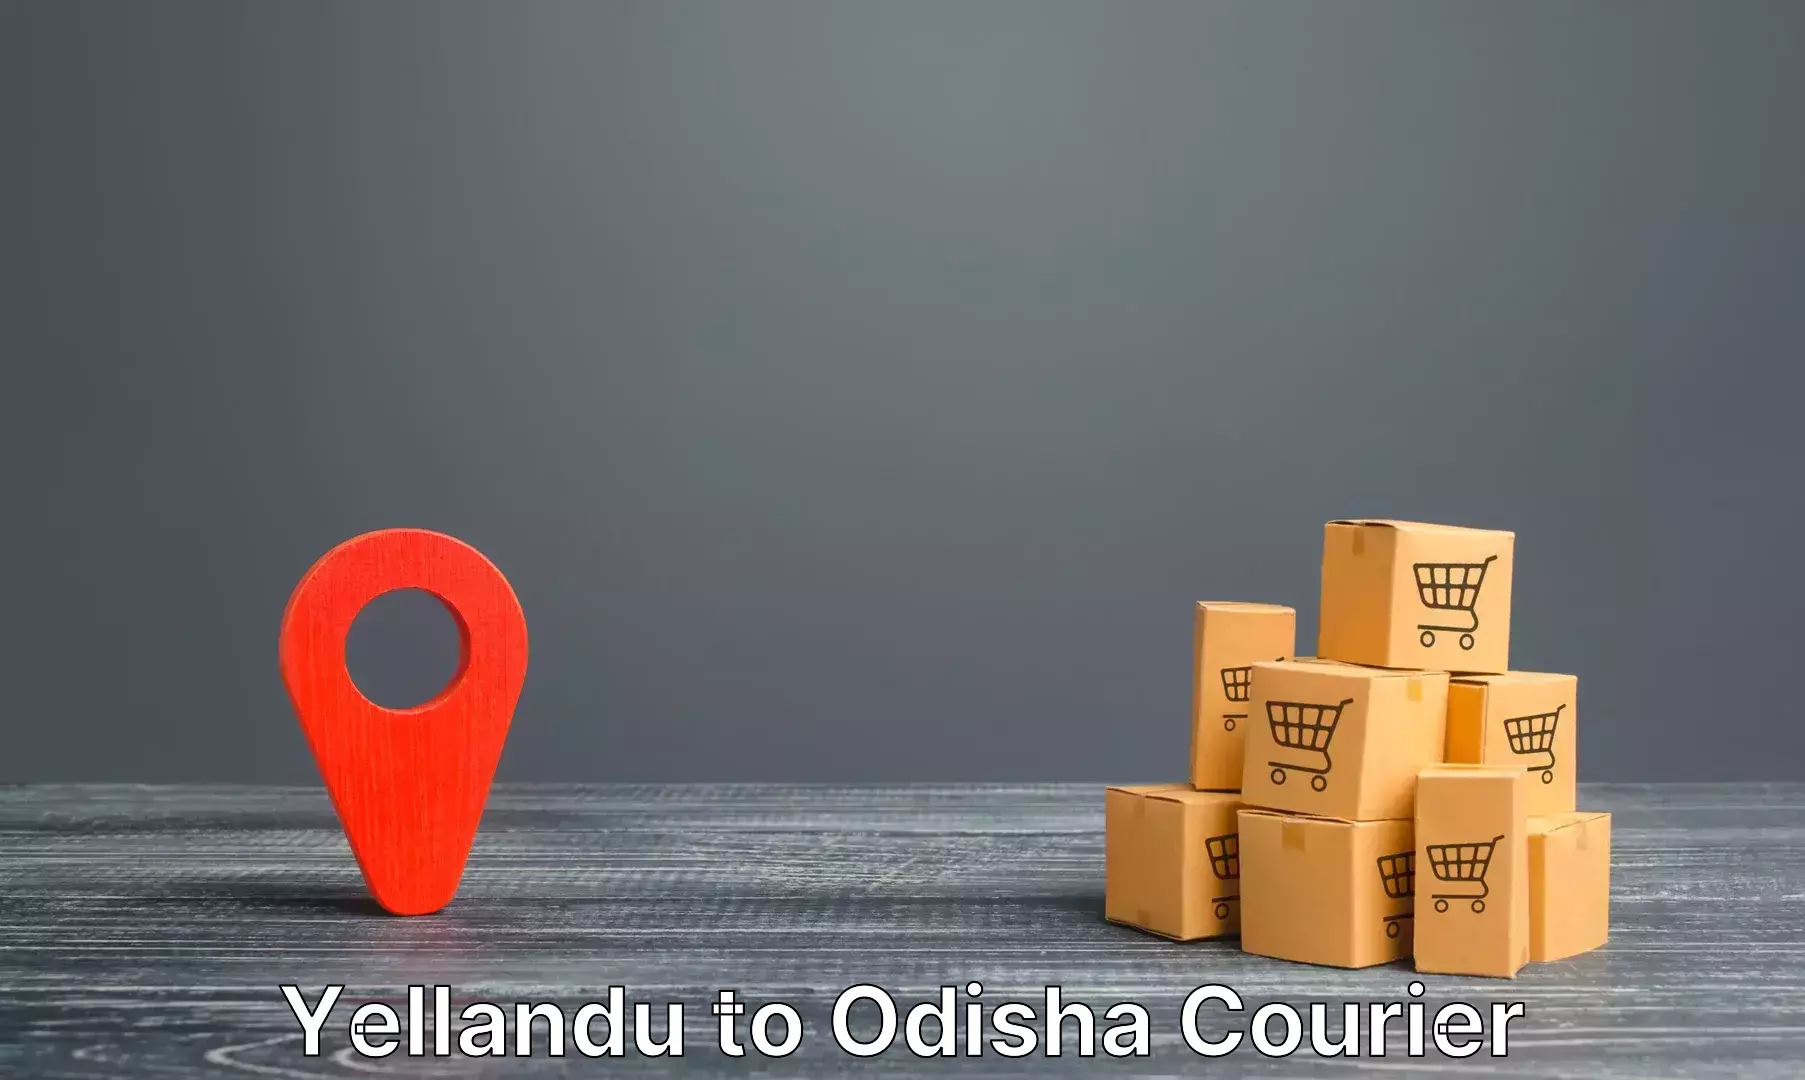 Luggage shipment tracking in Yellandu to Salipur